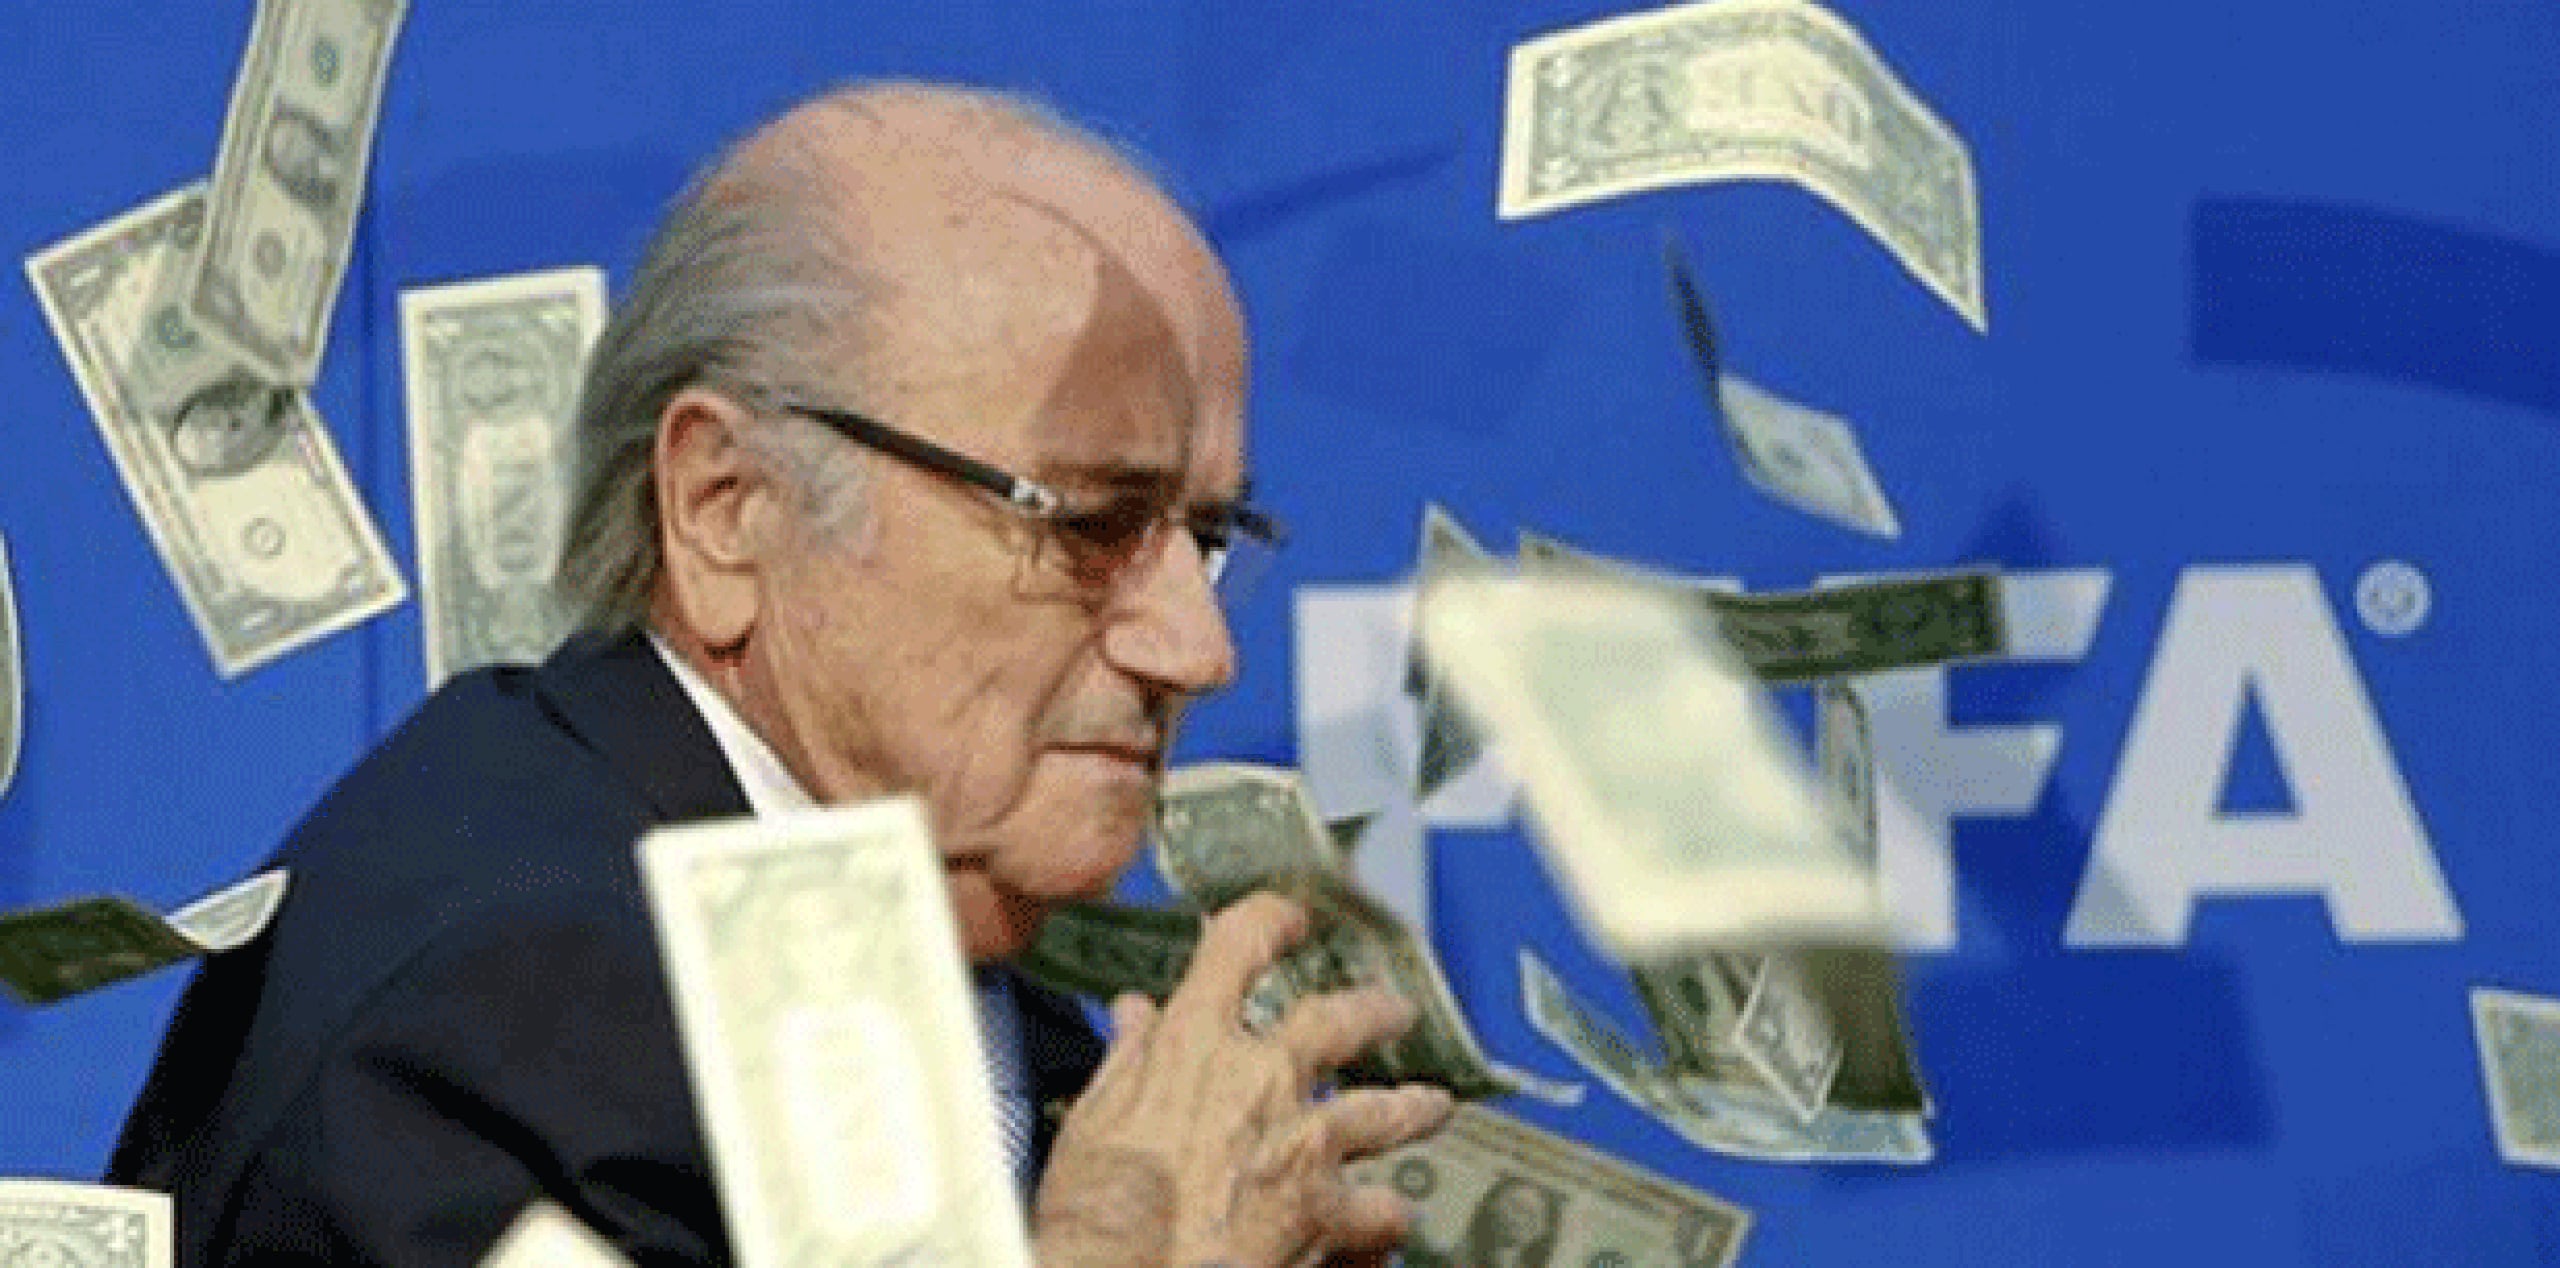 Joseph Blatter, presidente de la FIFA se disponía a ofrecer una conferencia de prensa en el marco de una sesión del comité ejecutivo cuando el comediante Simon Brodkin se levantó de un asiento en la primera fila y la tiró lo que parecieron billetes falsos de dólares. (Twitter)